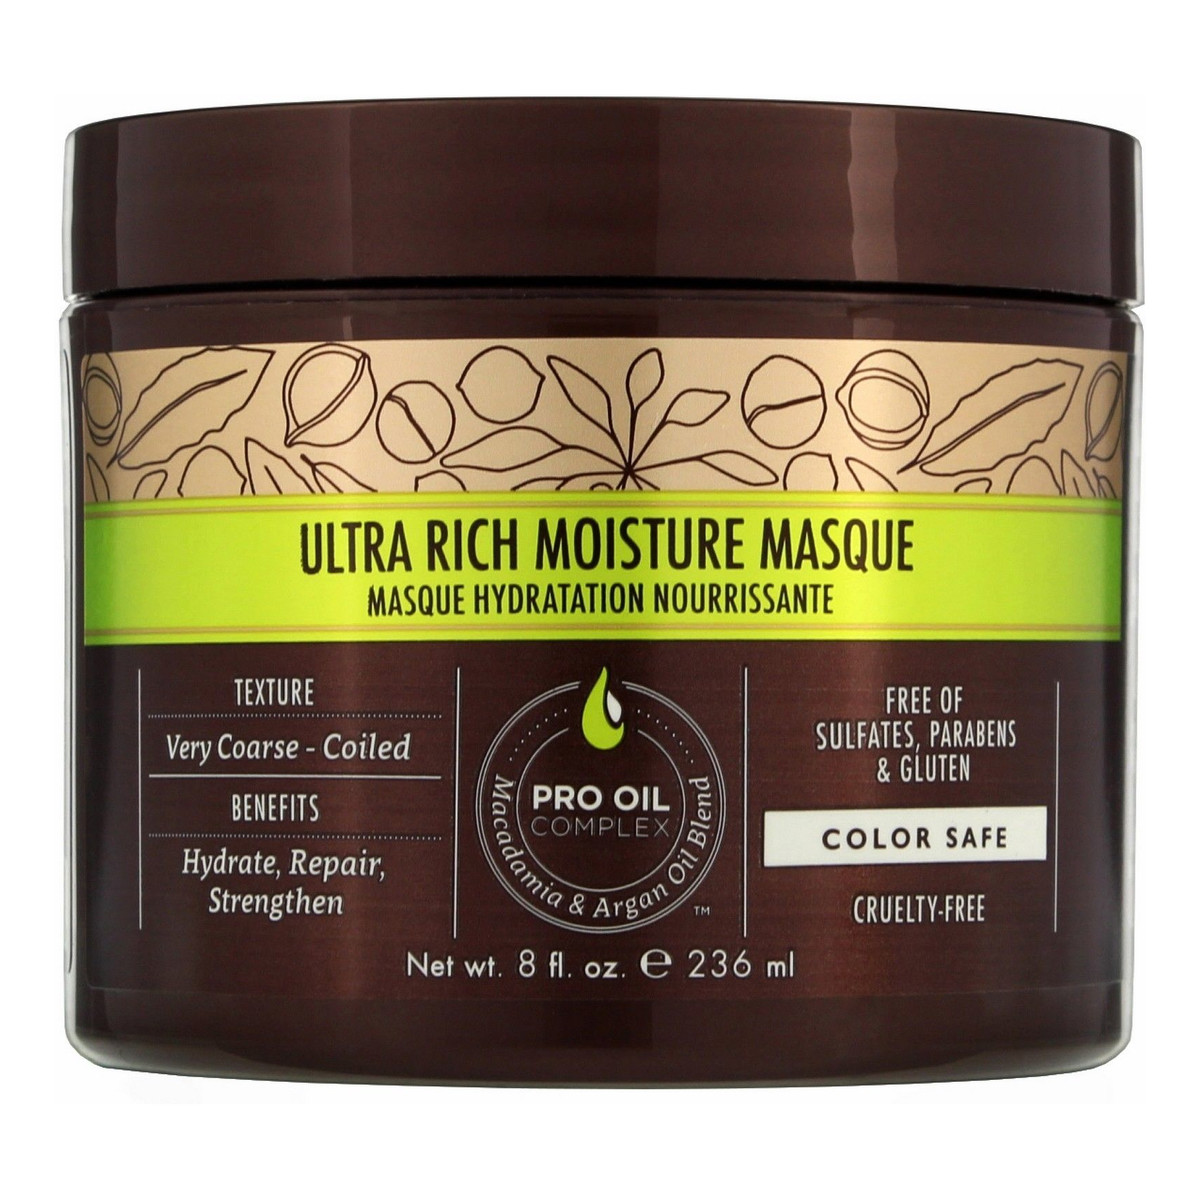 Macadamia Professional Ultra Rich Moisture Masque Nawilżająca maska do włosów grubych 236ml